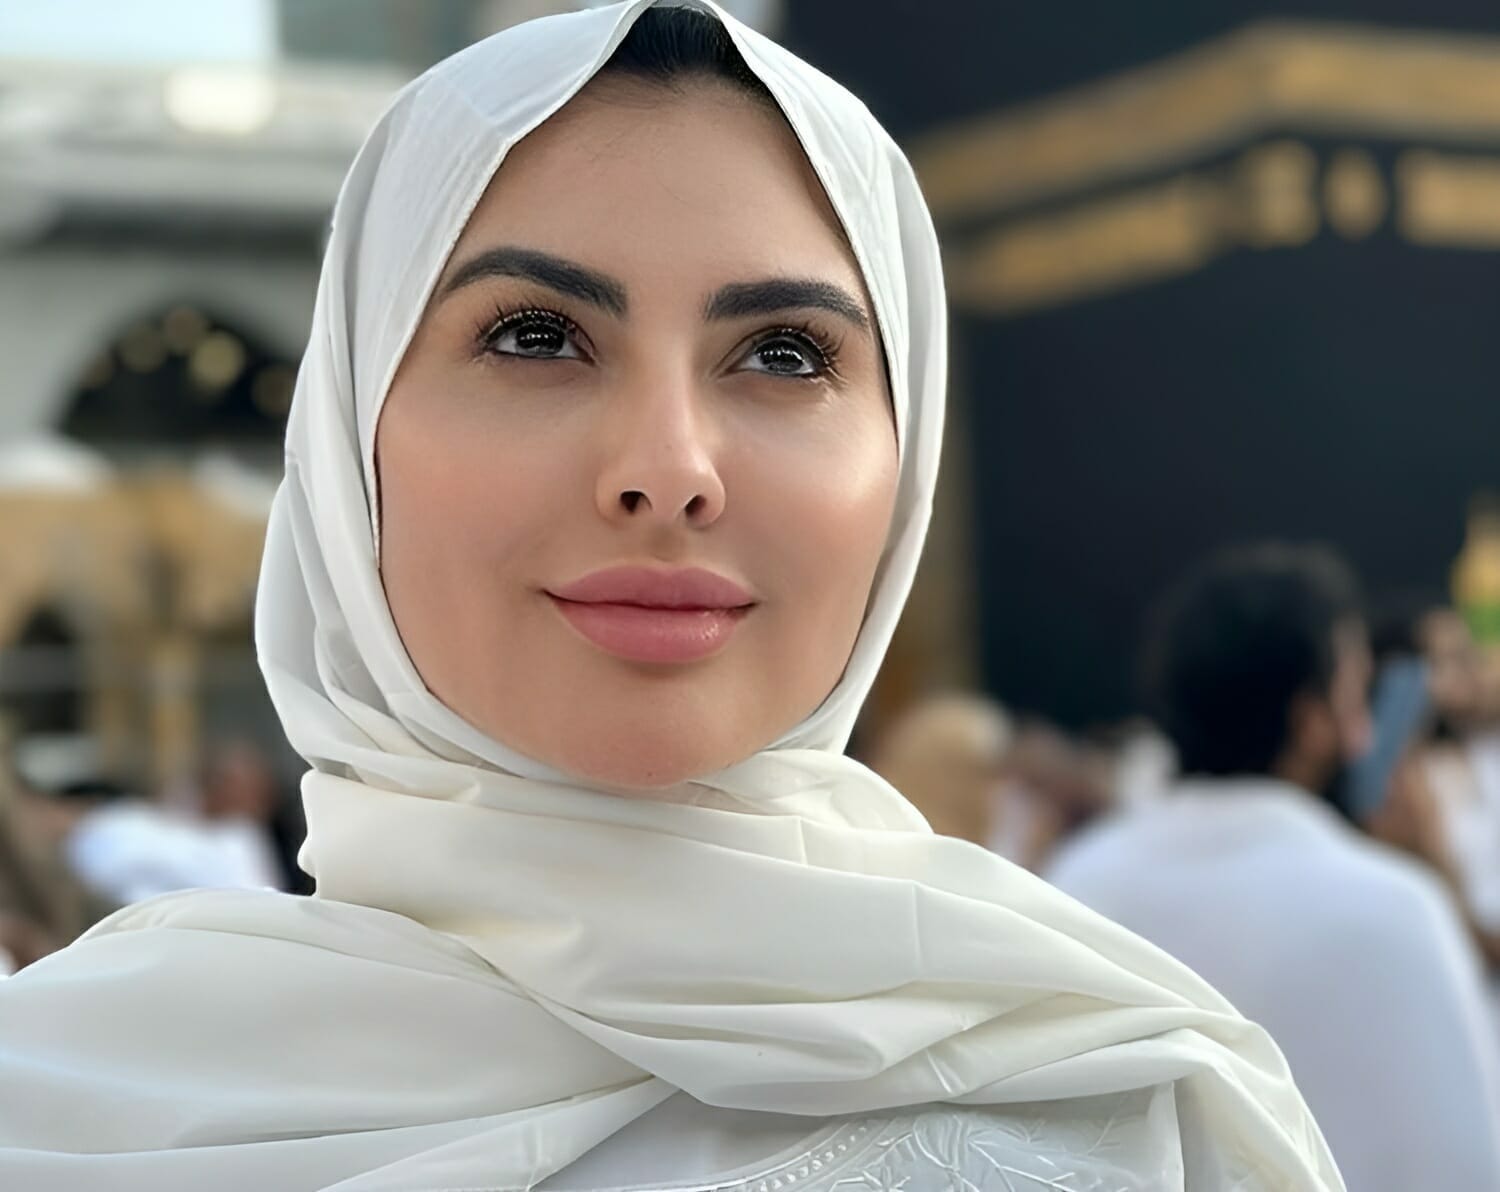 مريم حسين تعود للإثارة بعد انتهاء شهر رمضان وتنشر أجرأ صورها! watanserb.com